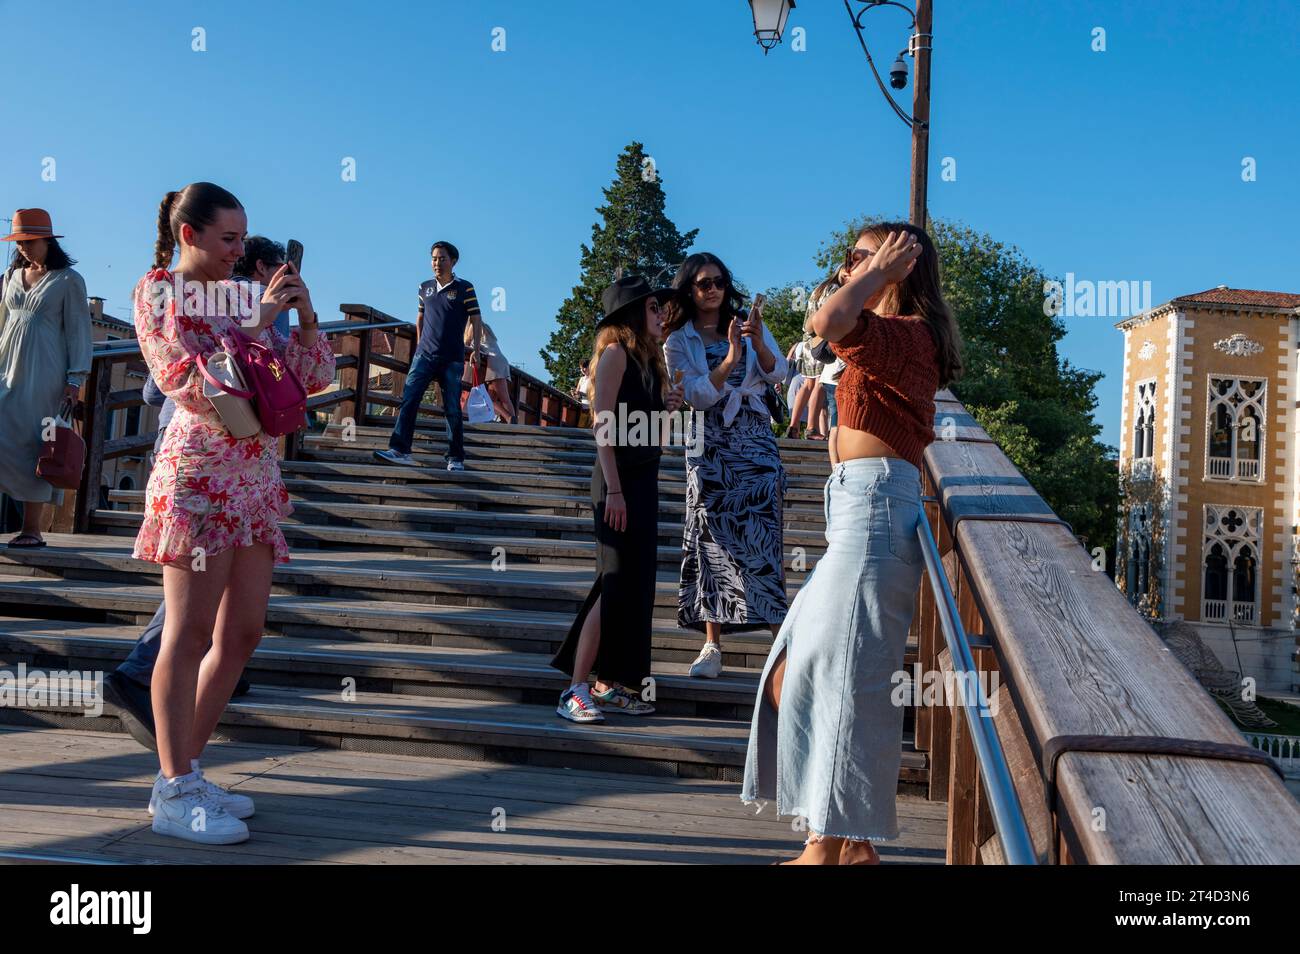 Selfies zu machen scheint ein beliebter Zeitvertreib zu sein, besonders bei jungen Touristen in Venedig in der venezianischen Region Norditalien. Stockfoto